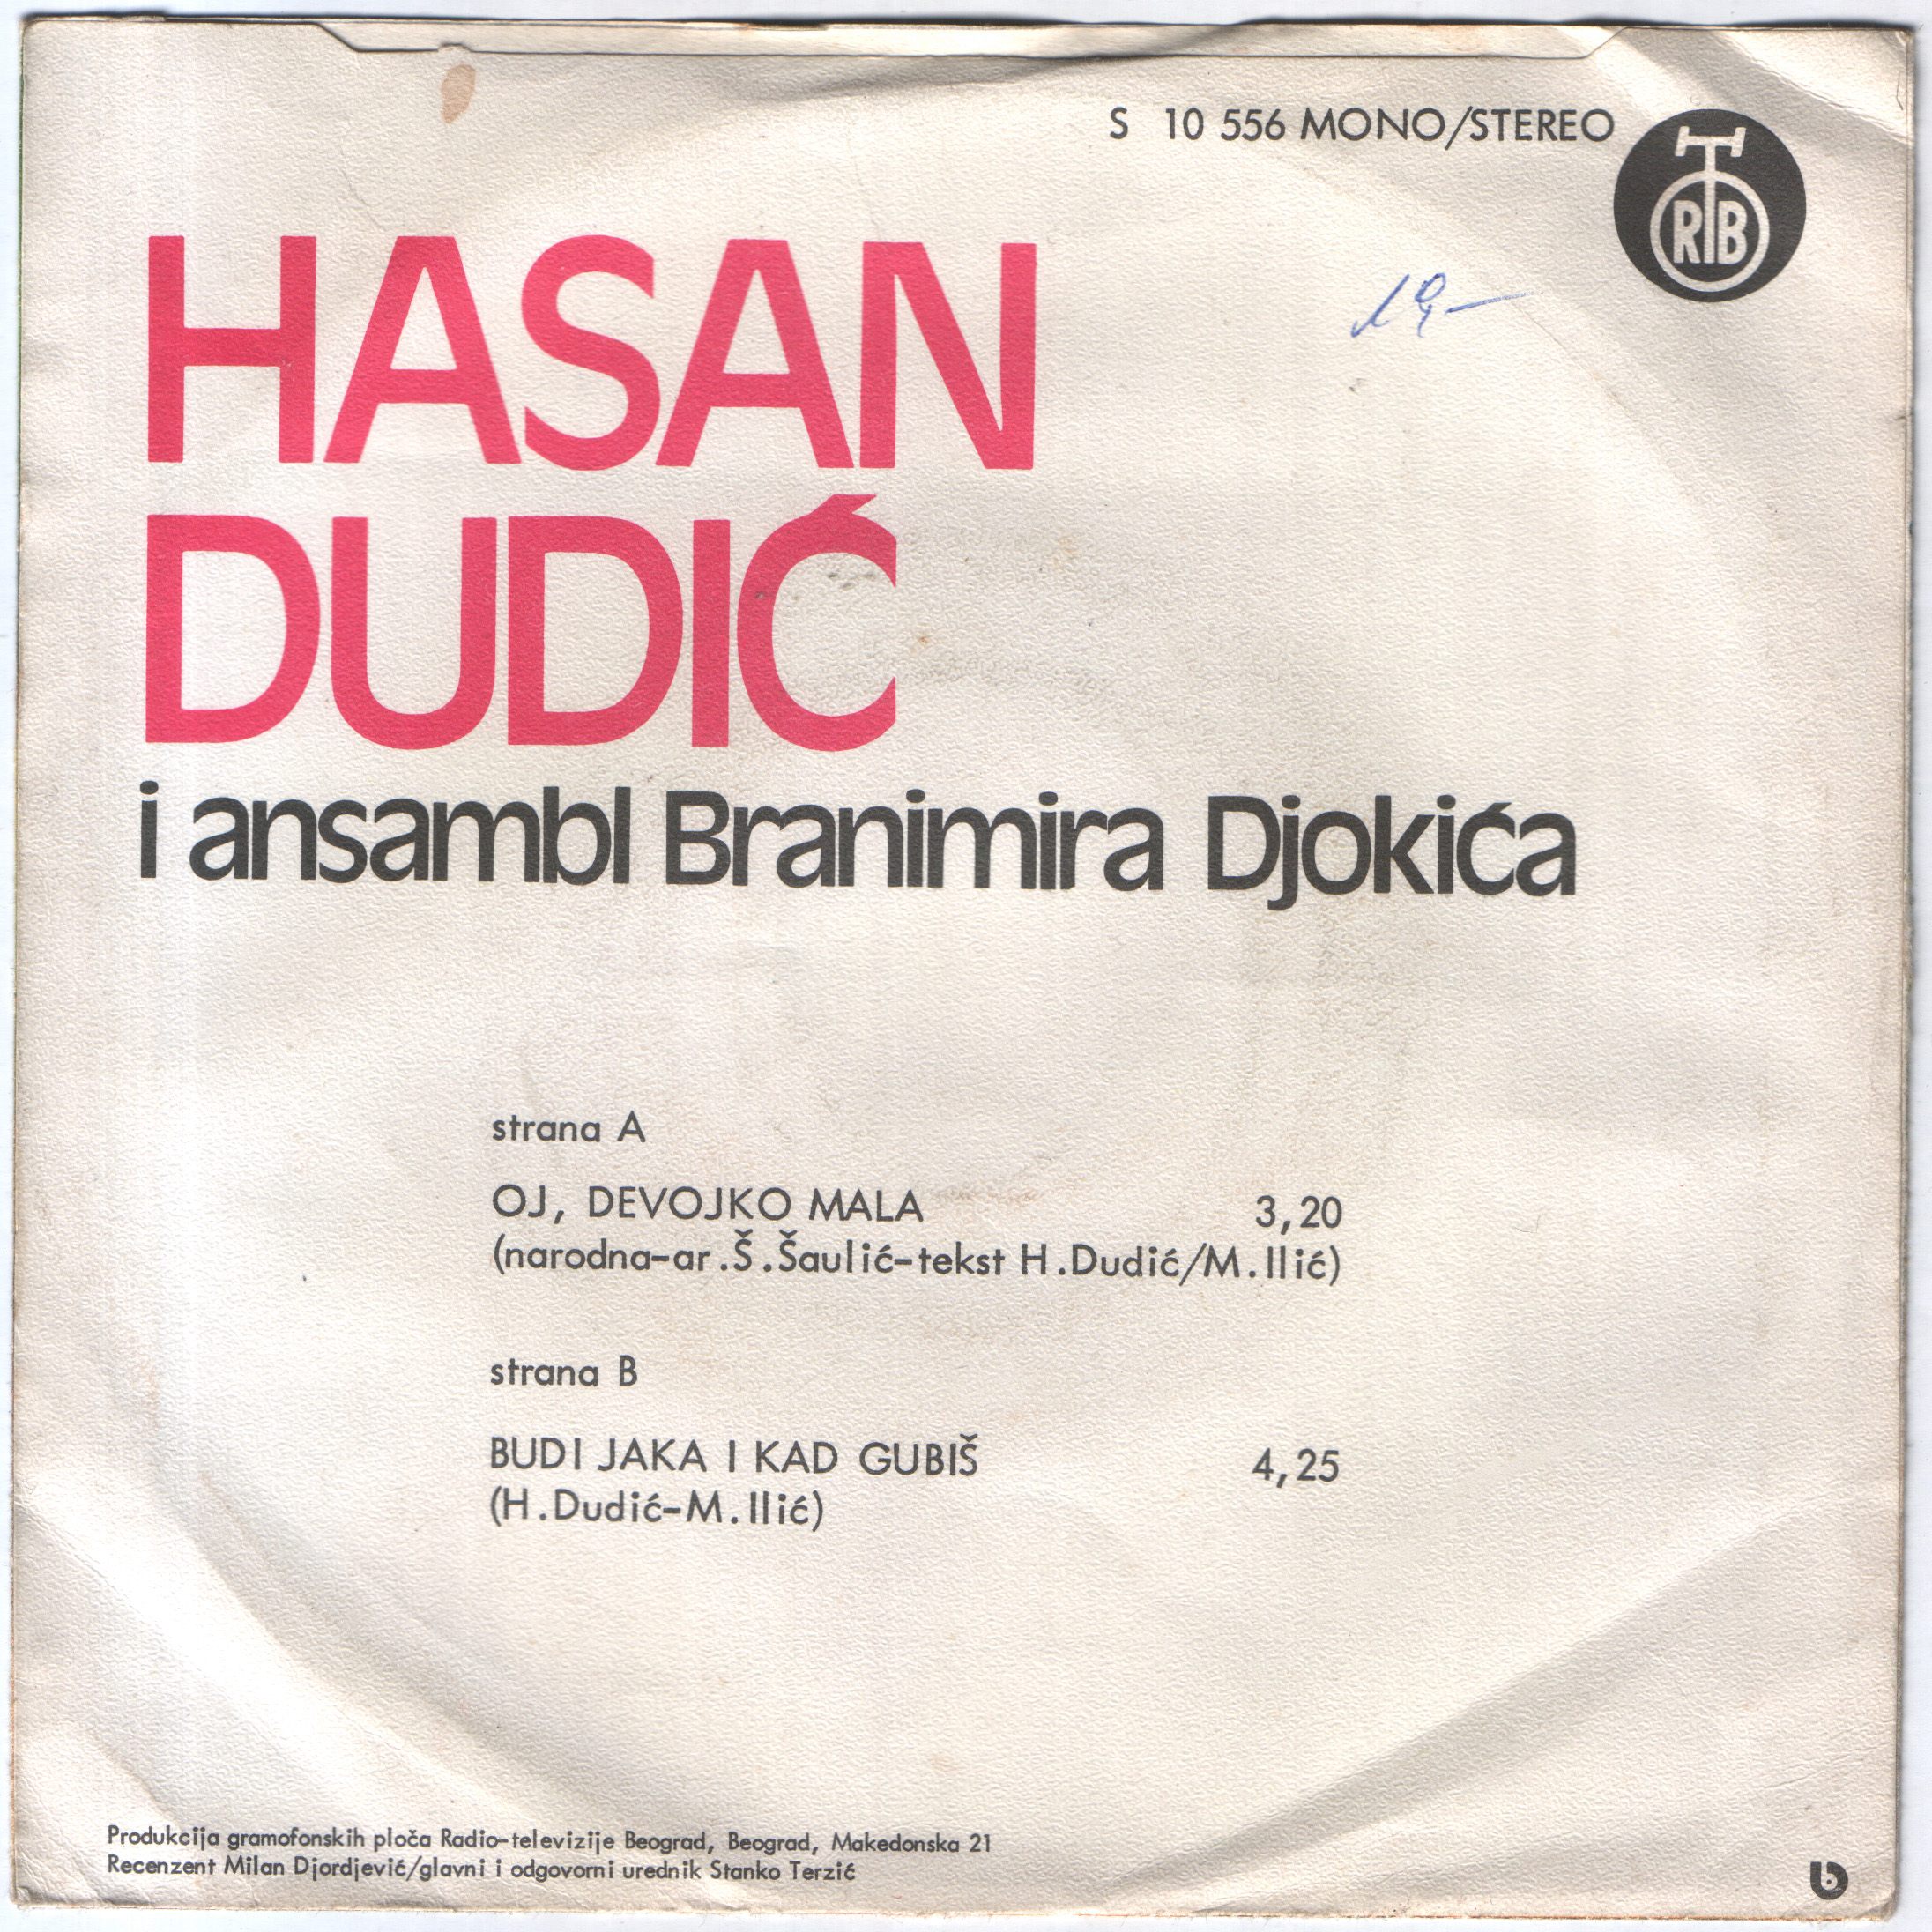 Hasan Dudic 1977 Z